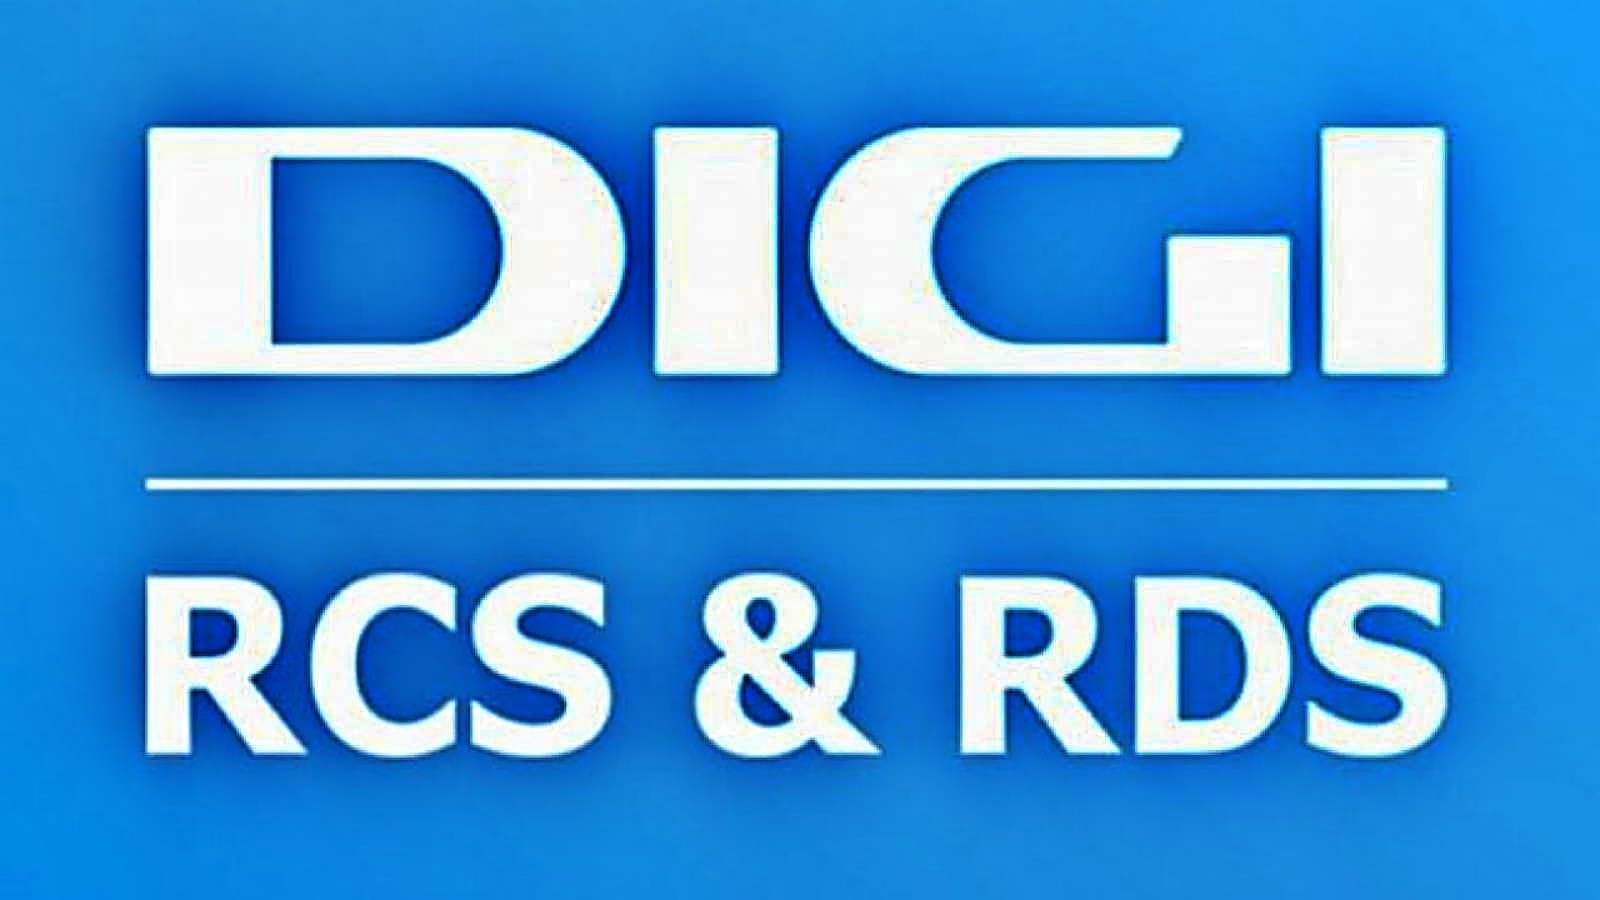 RCS & RDS WICHTIG Offizielle Ankündigung Gute Nachrichten für rumänische Kunden